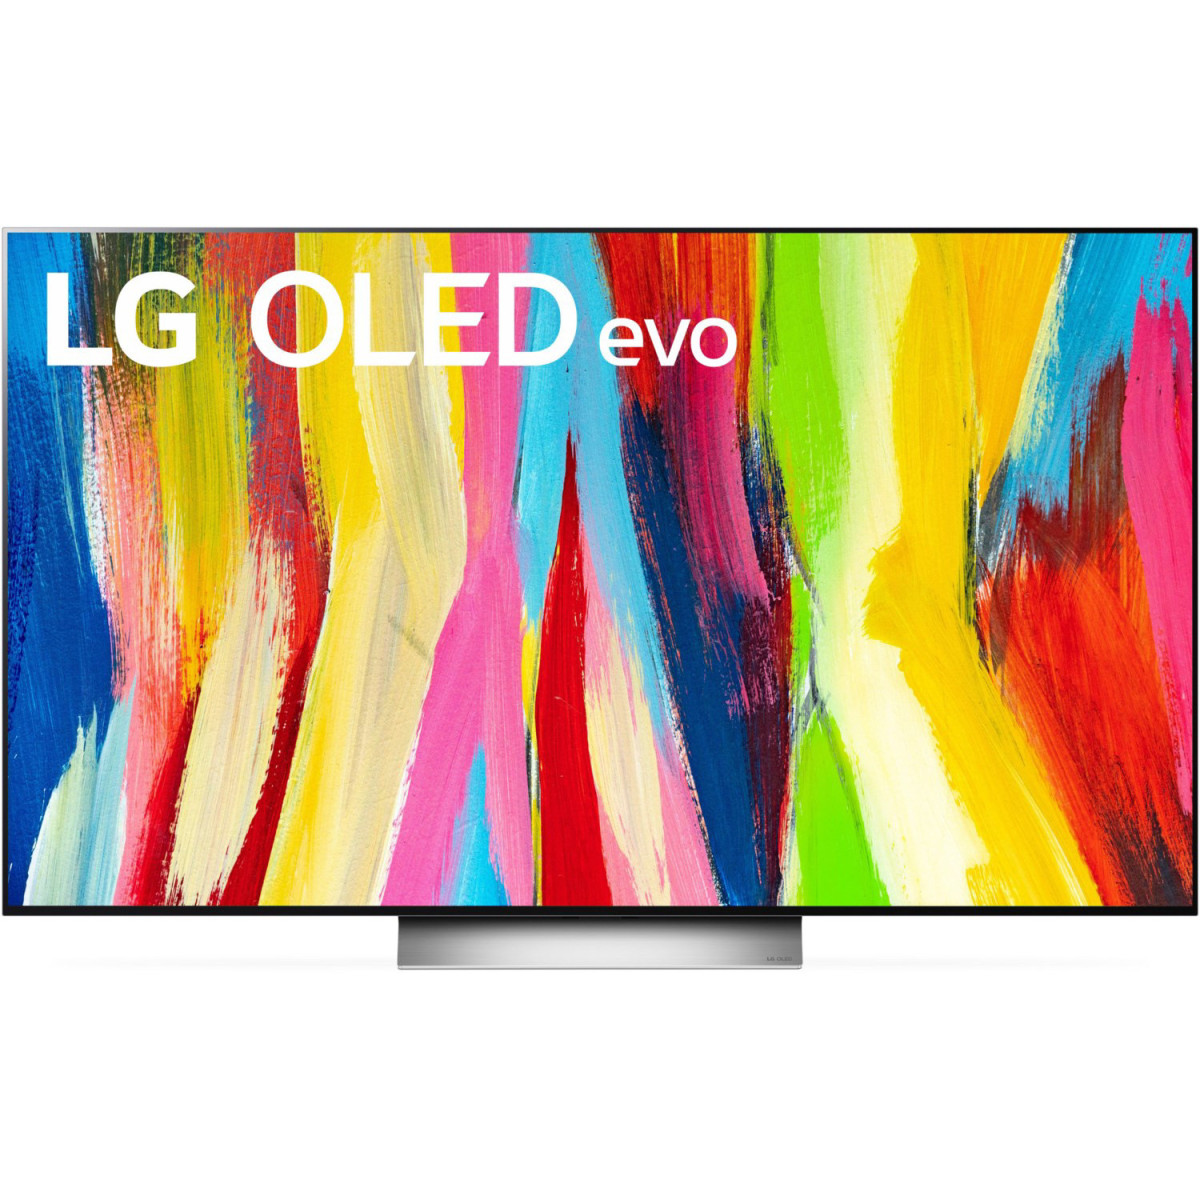 LG-Fernseher-OLED-EVO